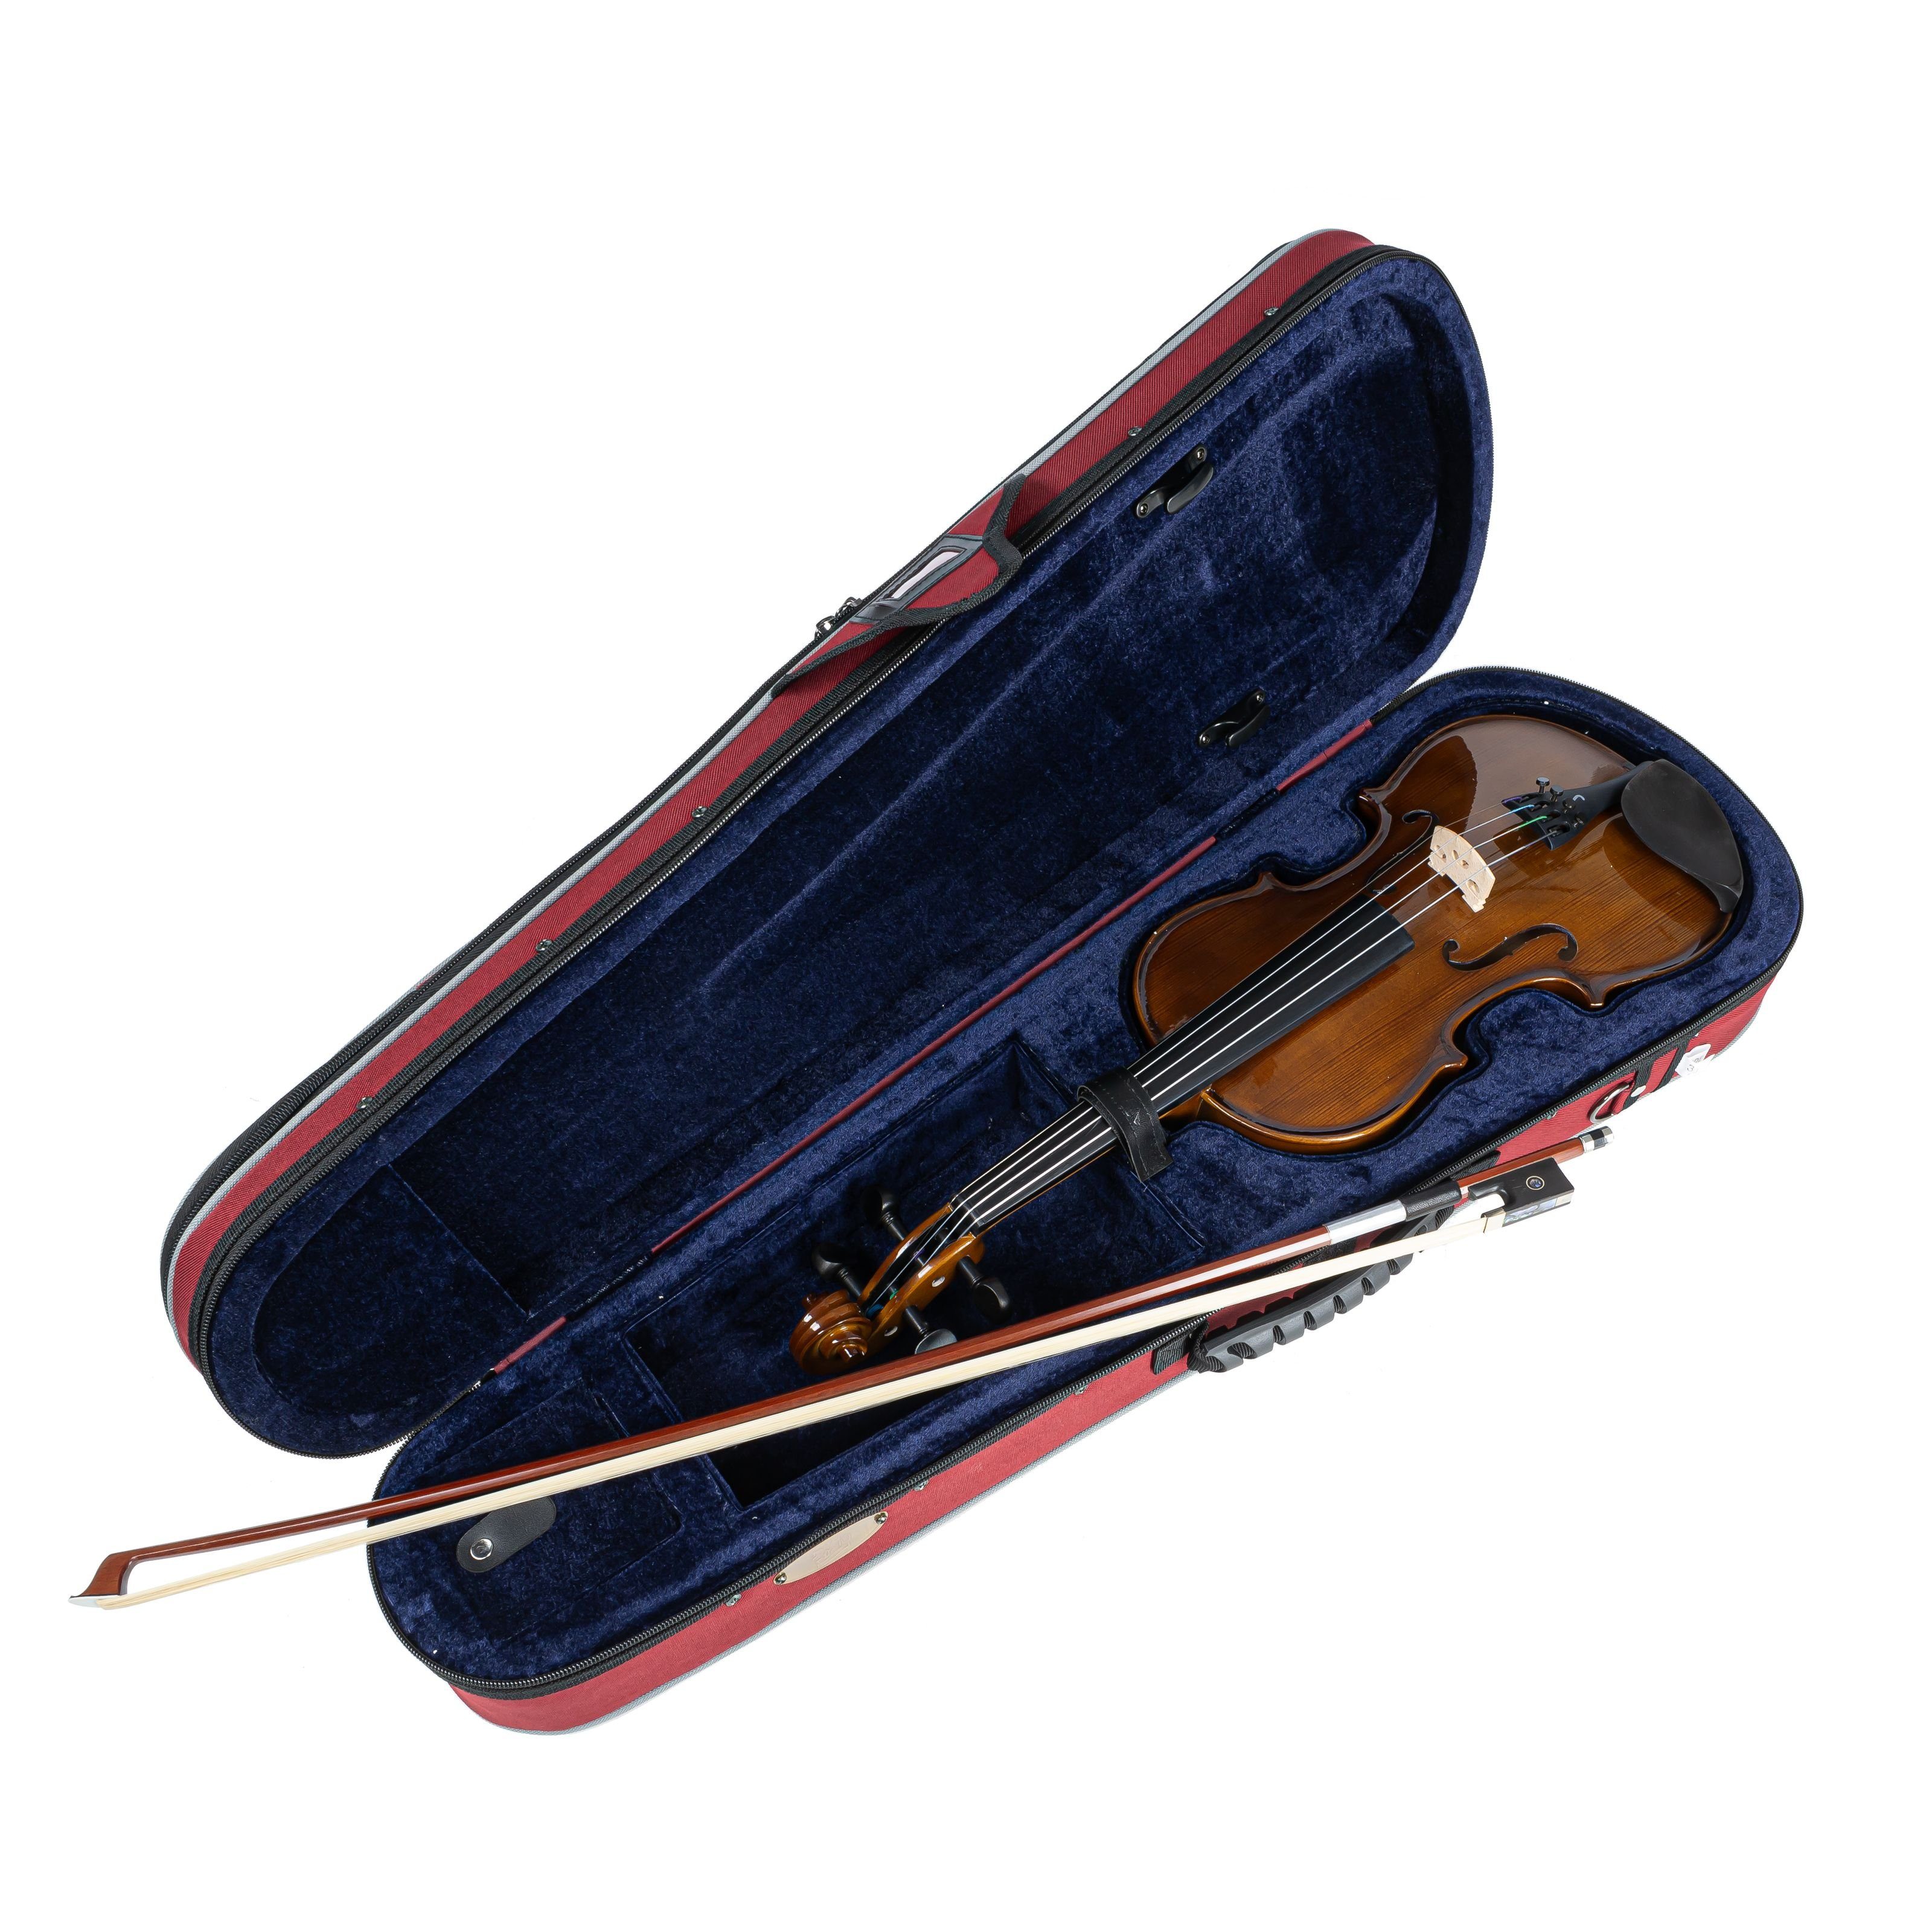 Stentor Violine, Violinen / Geigen, Akustische Violinen, Student II Violingarnitur 3/4 - Violine